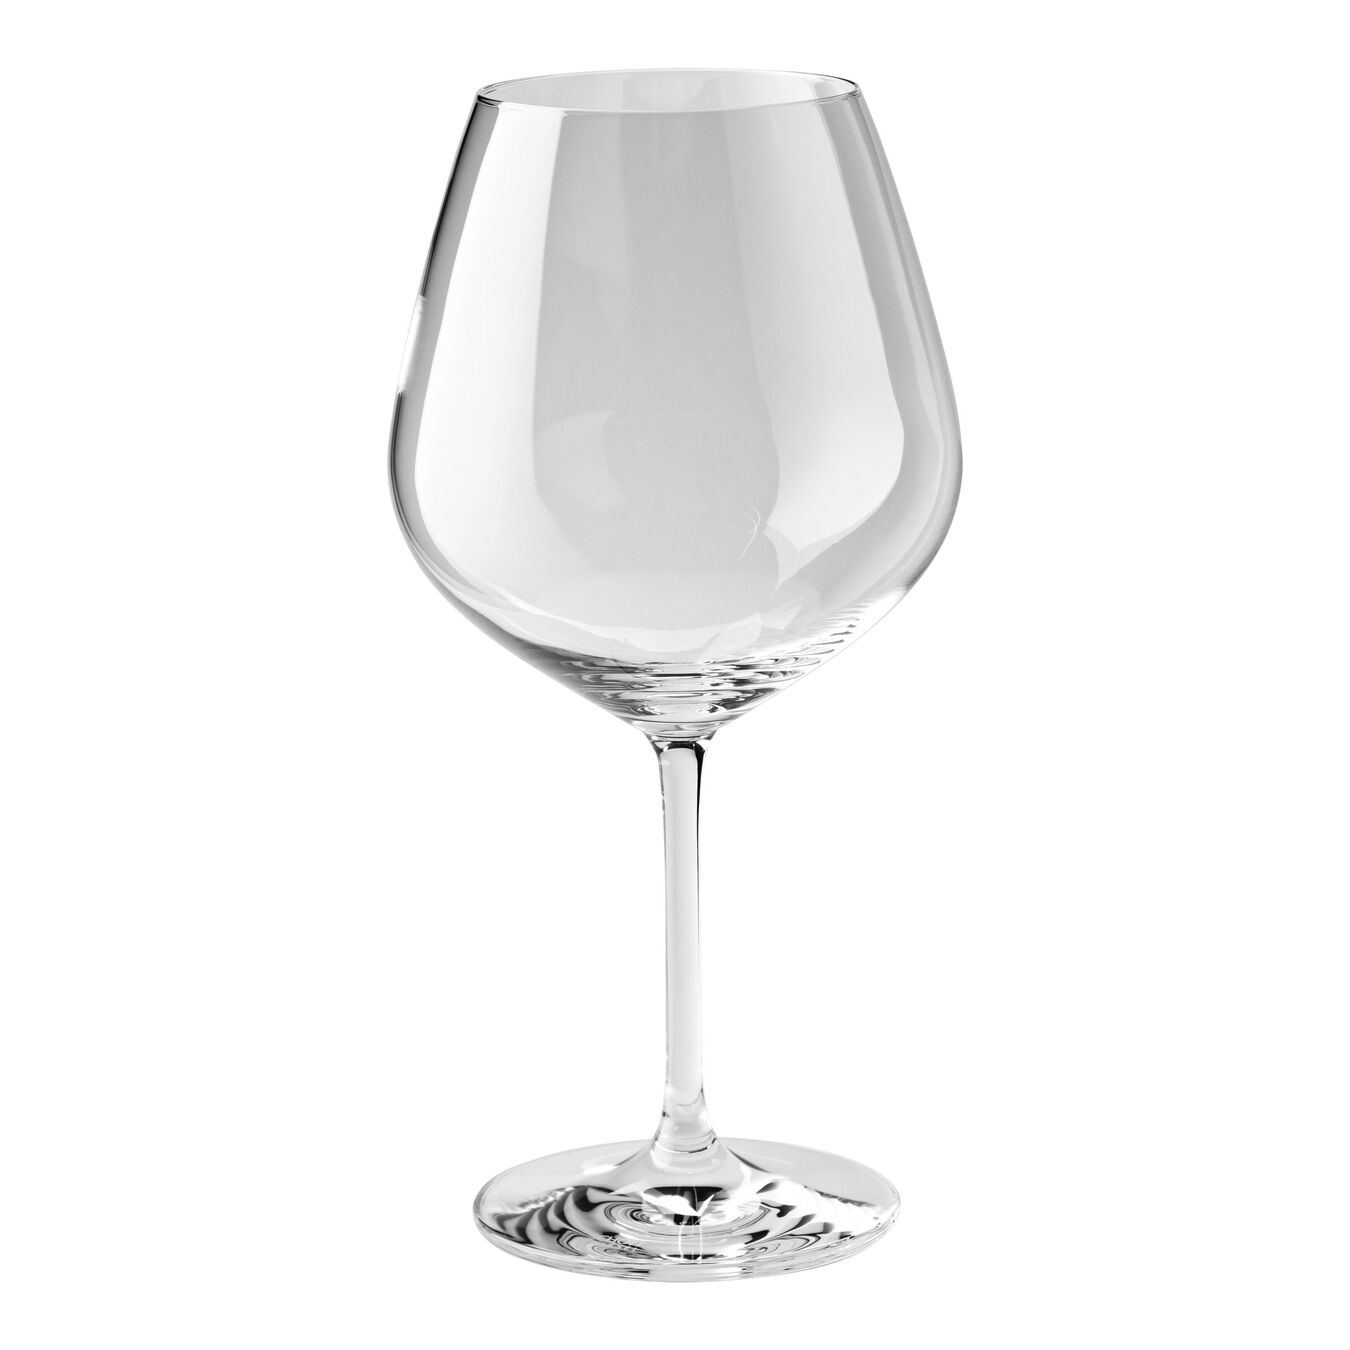 Tazza di vino rosso - 725 ml, vetro cristallino,,large 1